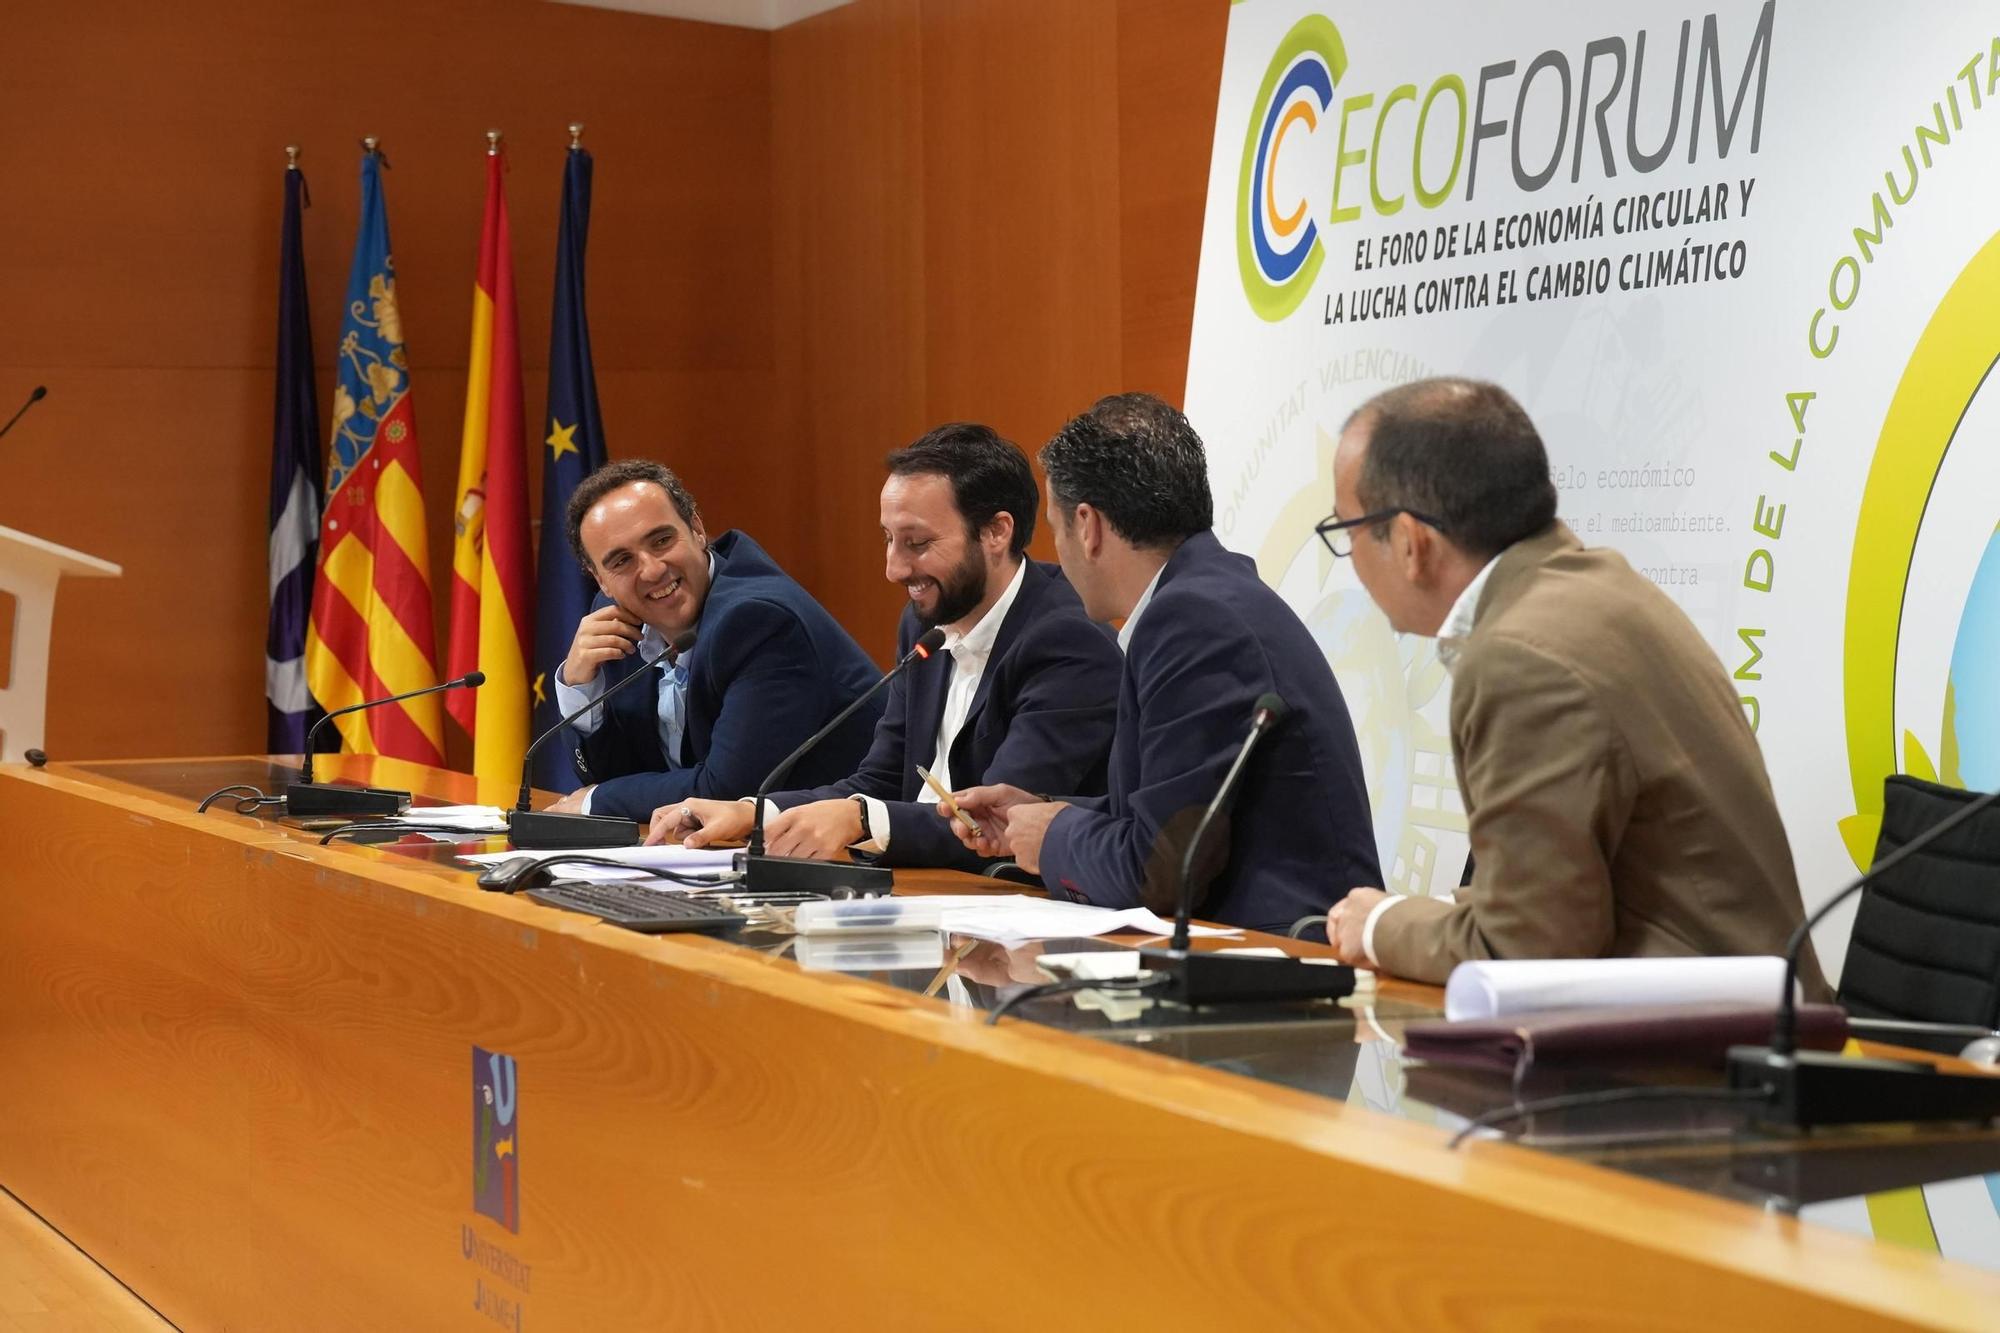 Primera jornada del Ecoforum en Castelló